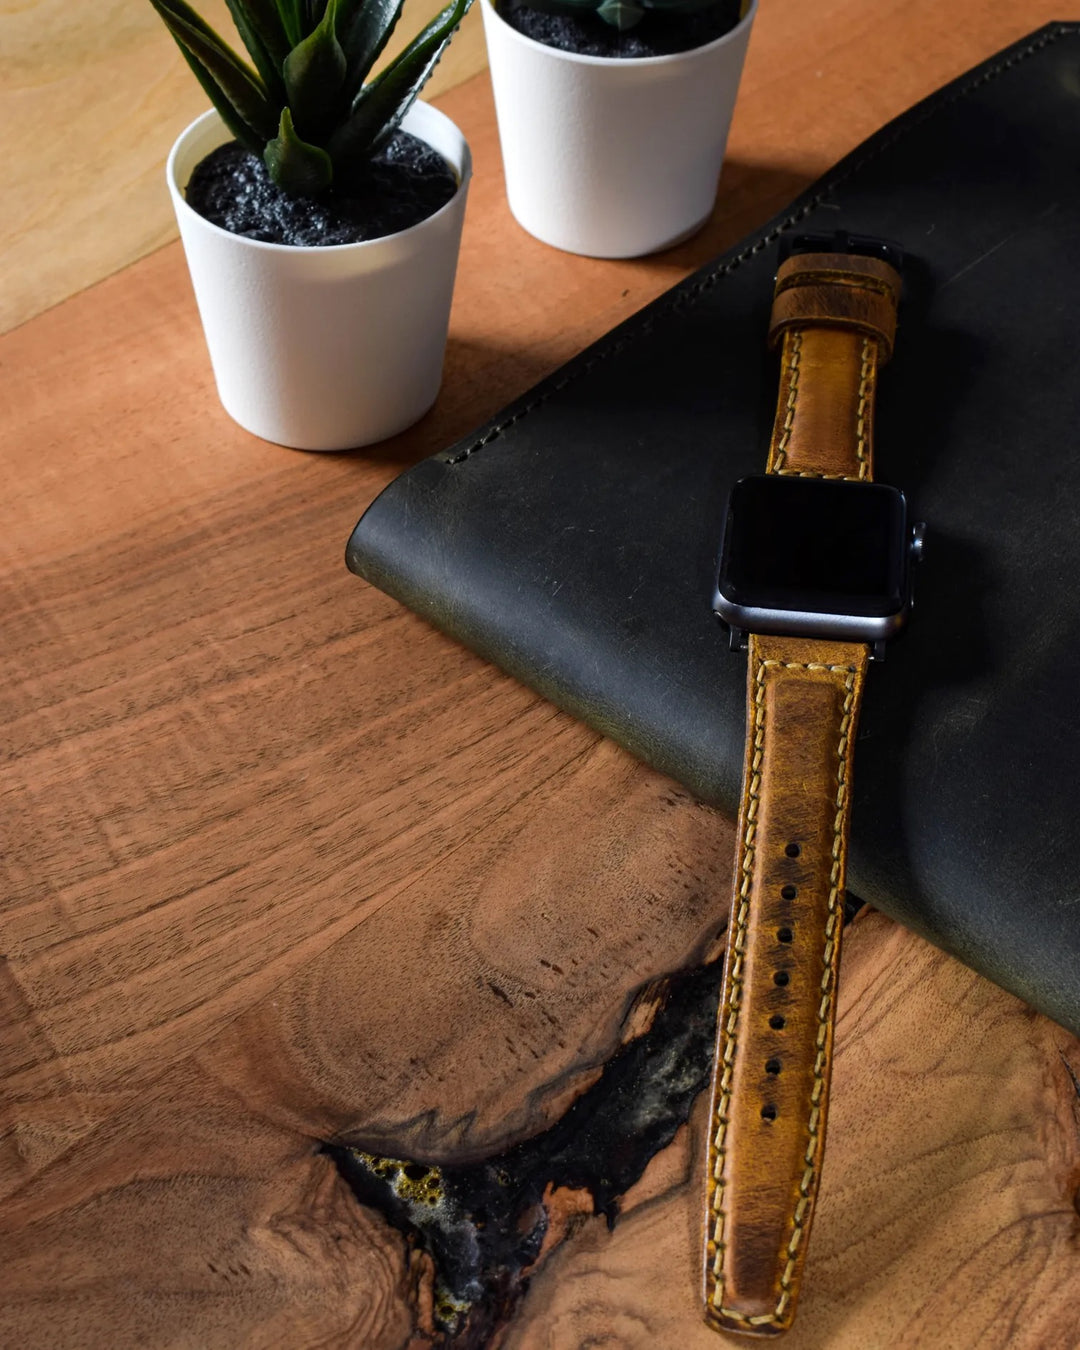 Apple Watch 9 45 MM El Yapımı Deri Kordon Kayış Açık Kahverengi